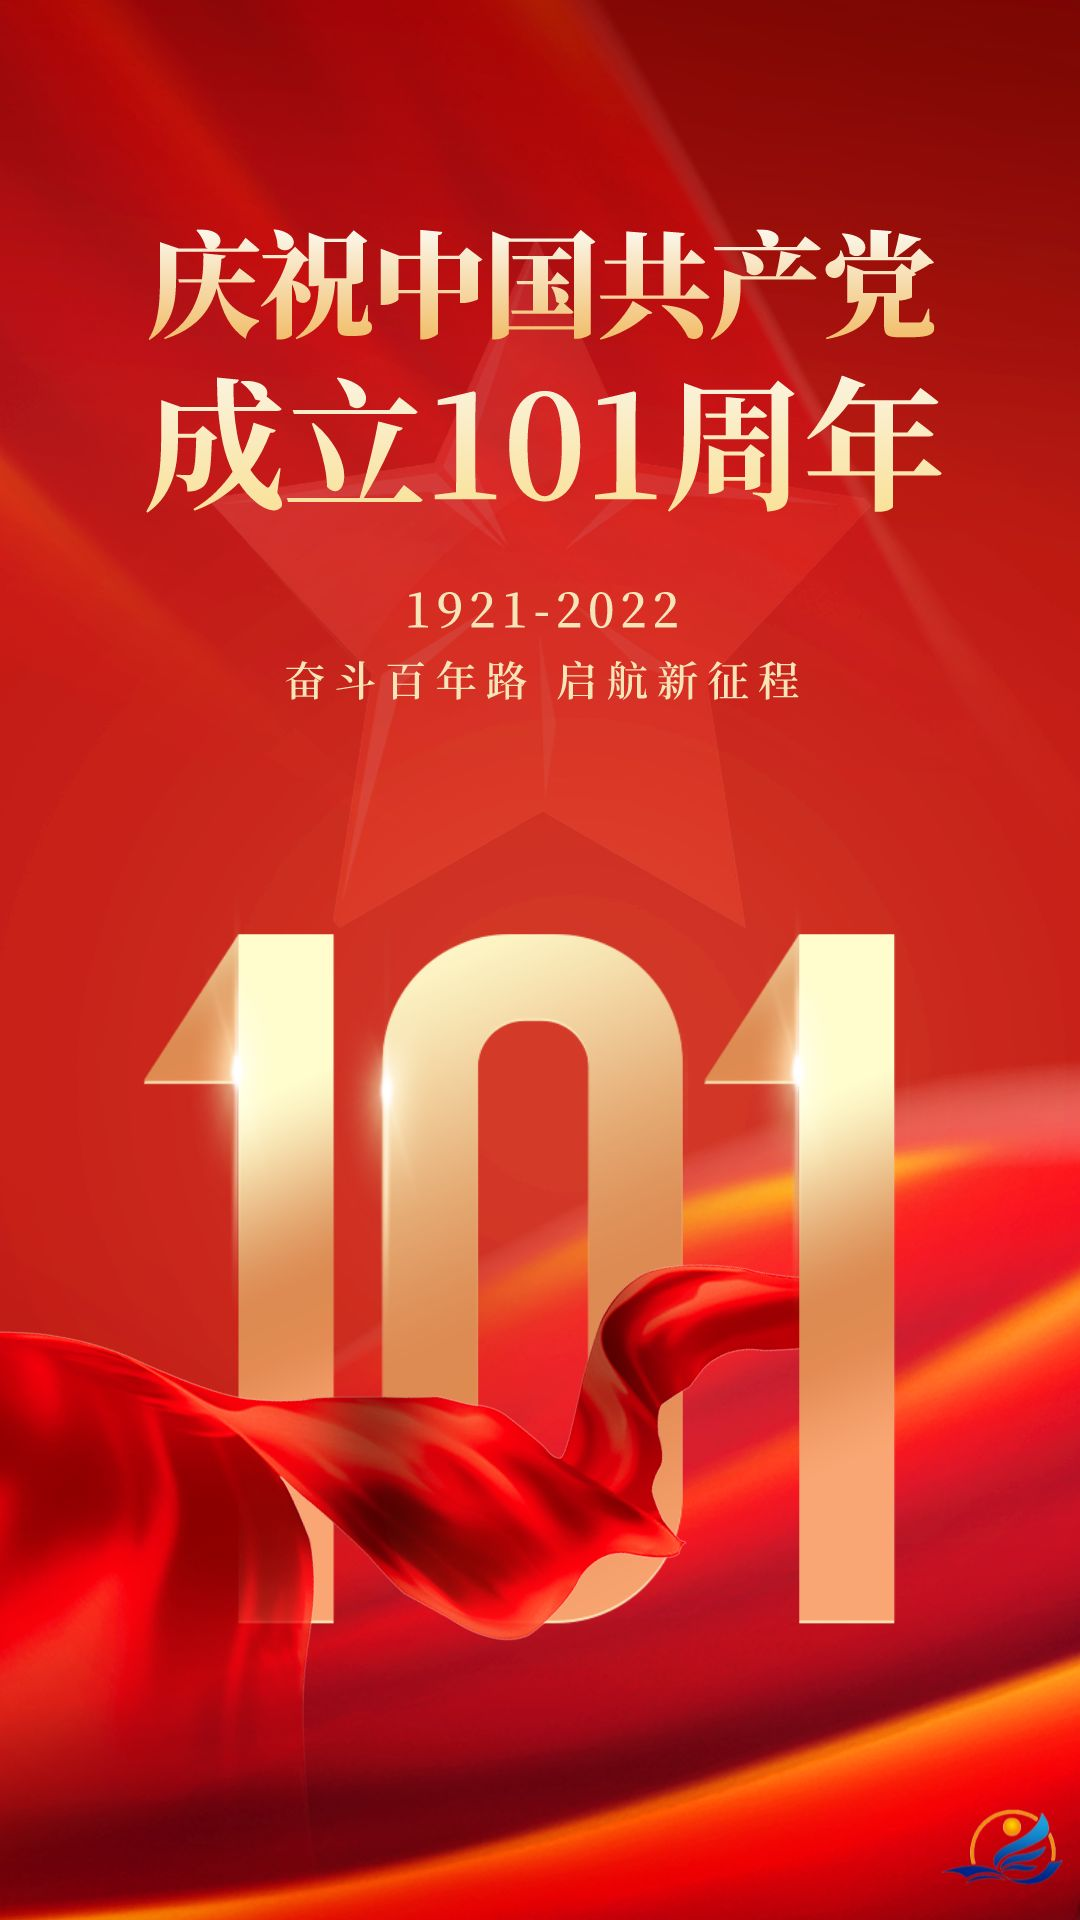 热烈庆祝中国共产党成立101周年!